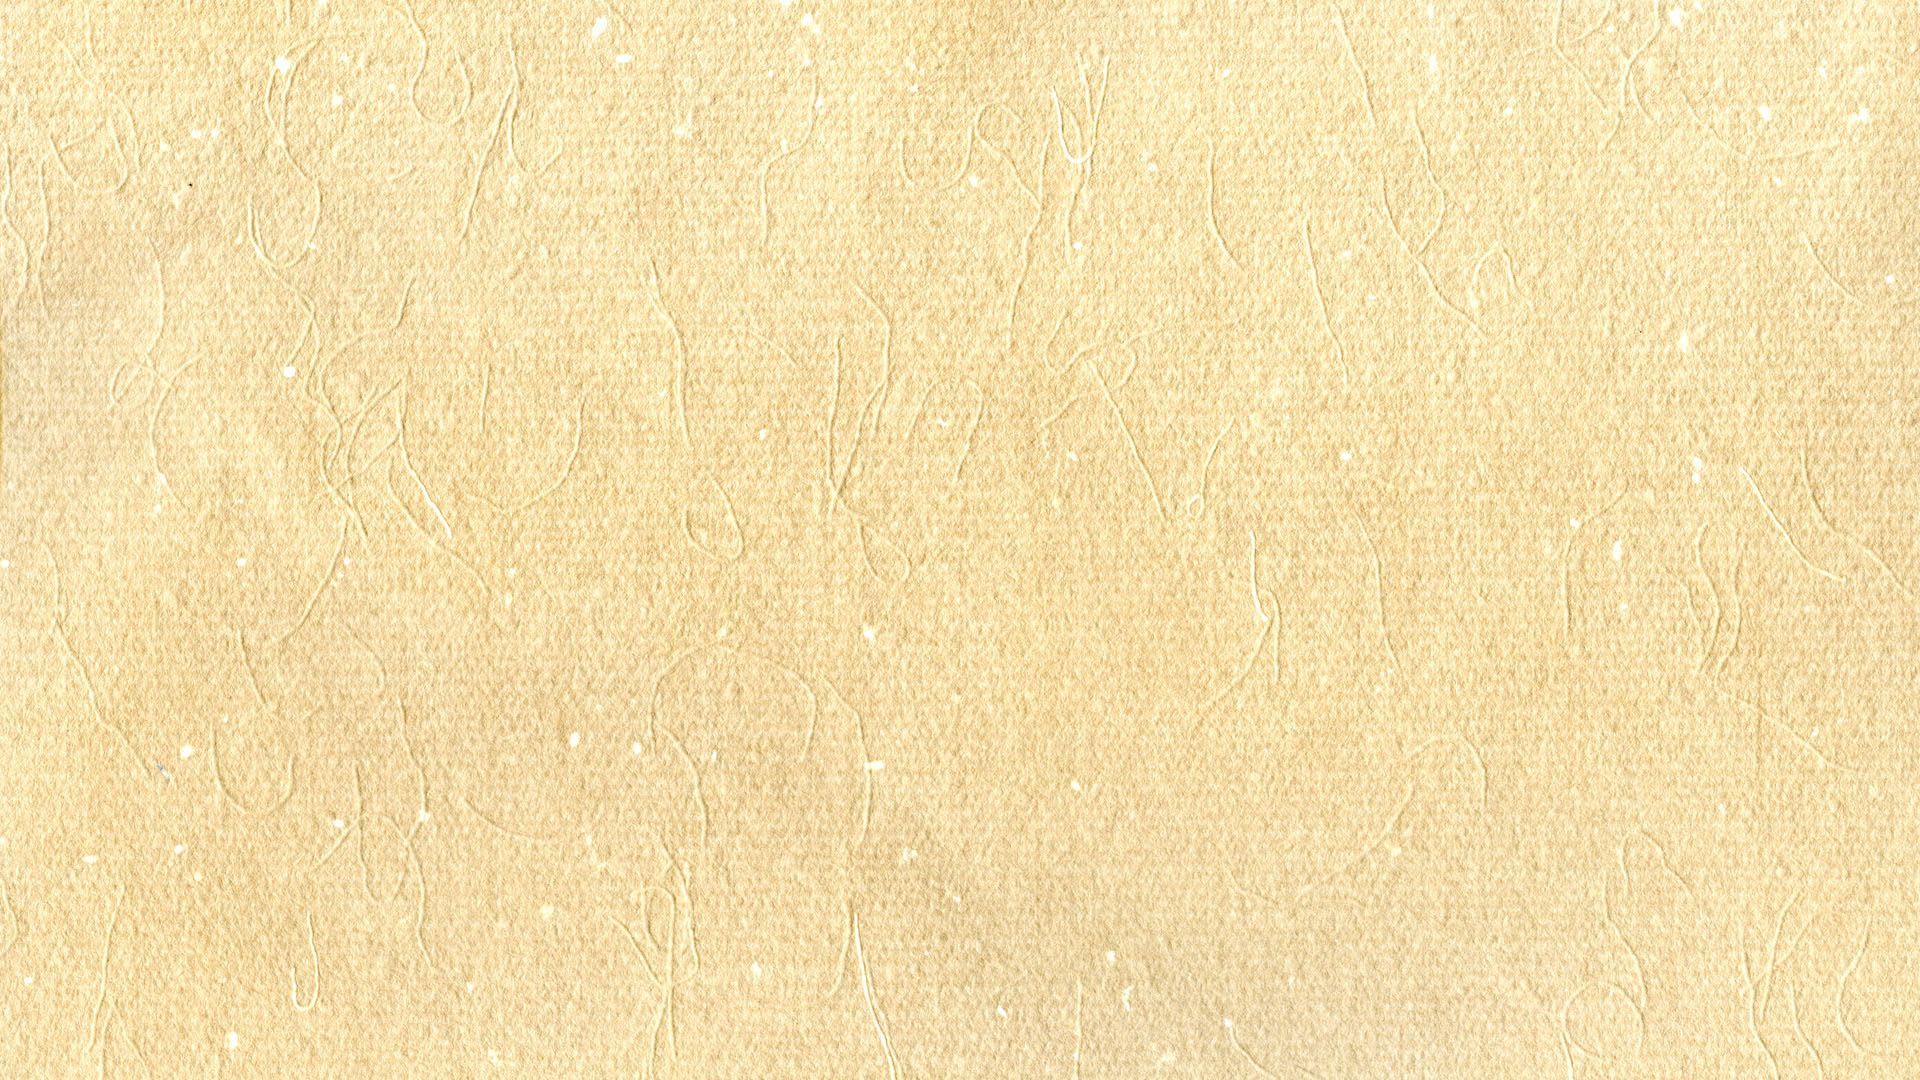 Los mejores 58+ fondos de pantalla beige en HipWallpaper | Papel pintado beige, beige